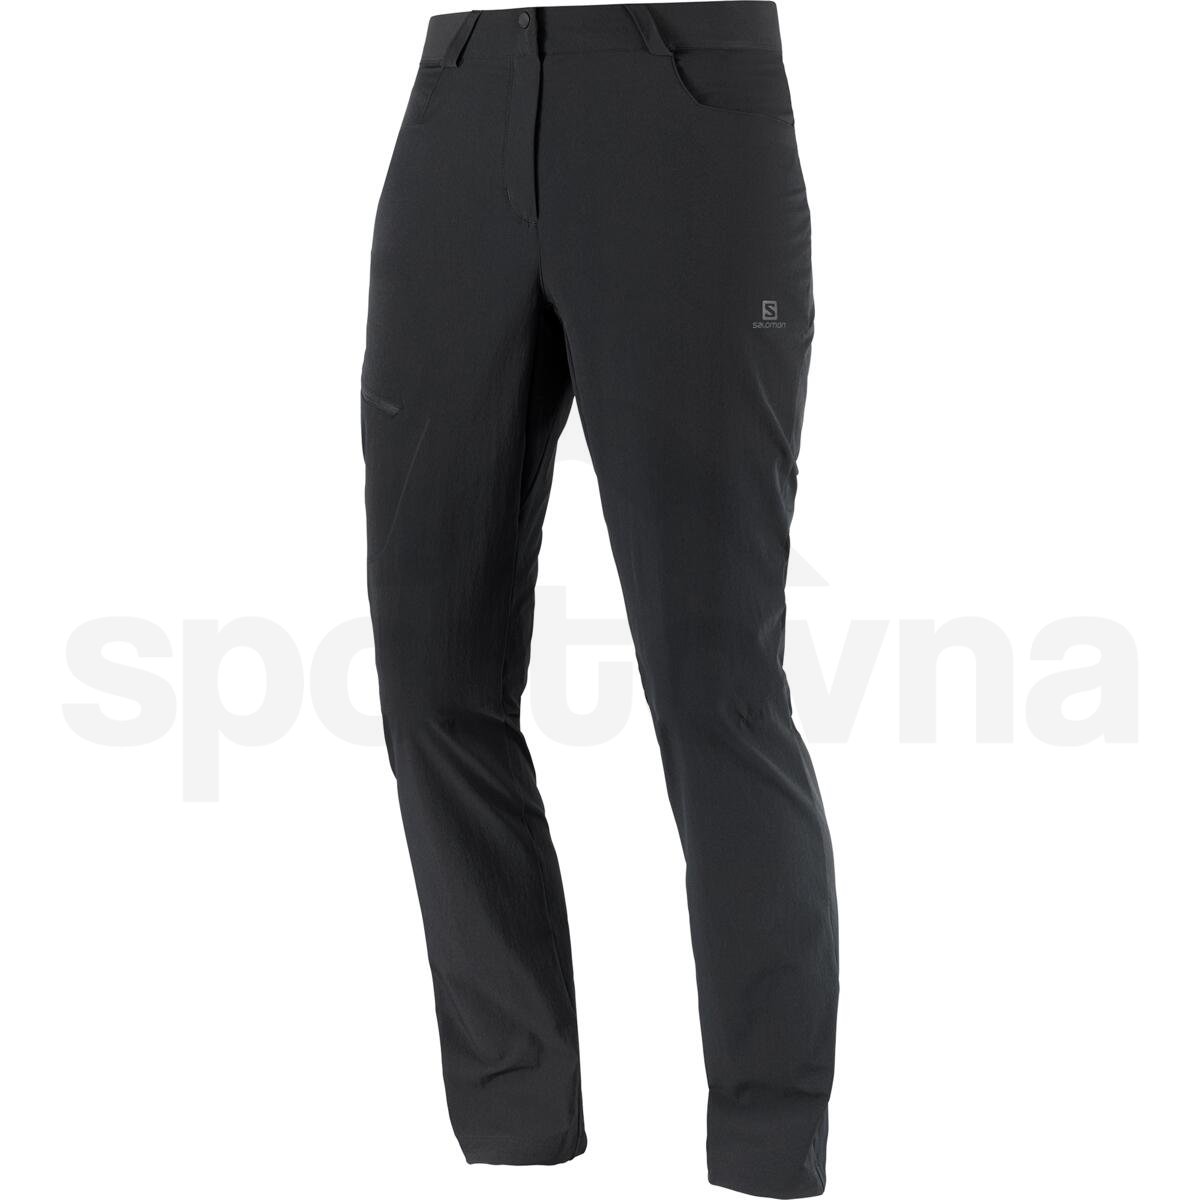 Kalhoty Salomon WAYFARER PANTS W - černá (prodloužená délka)